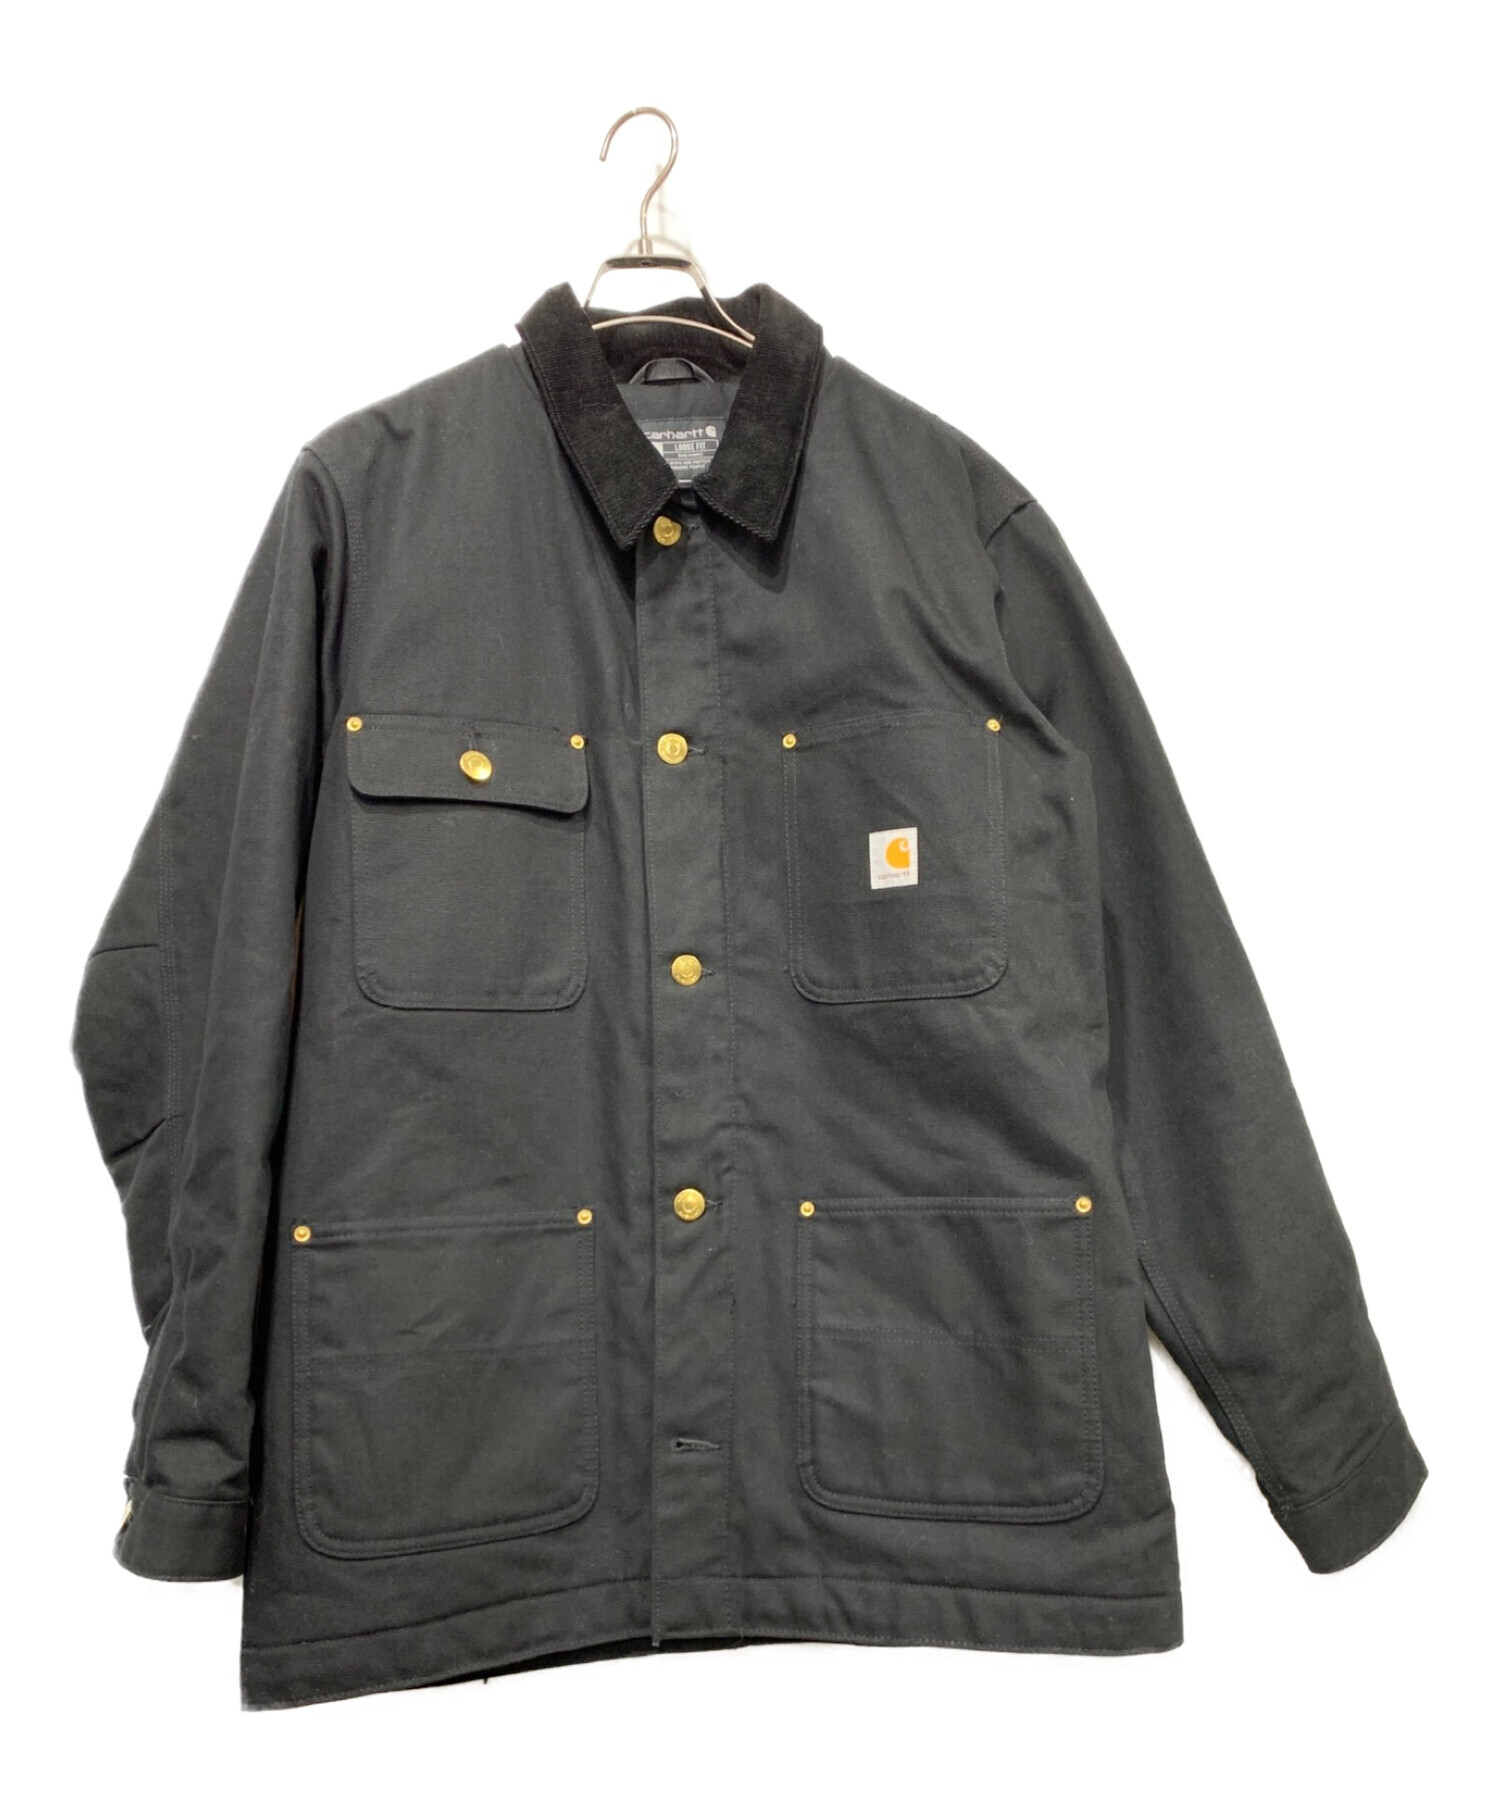 CarHartt (カーハート) ダックジャケット ブラック サイズ:Mサイズ